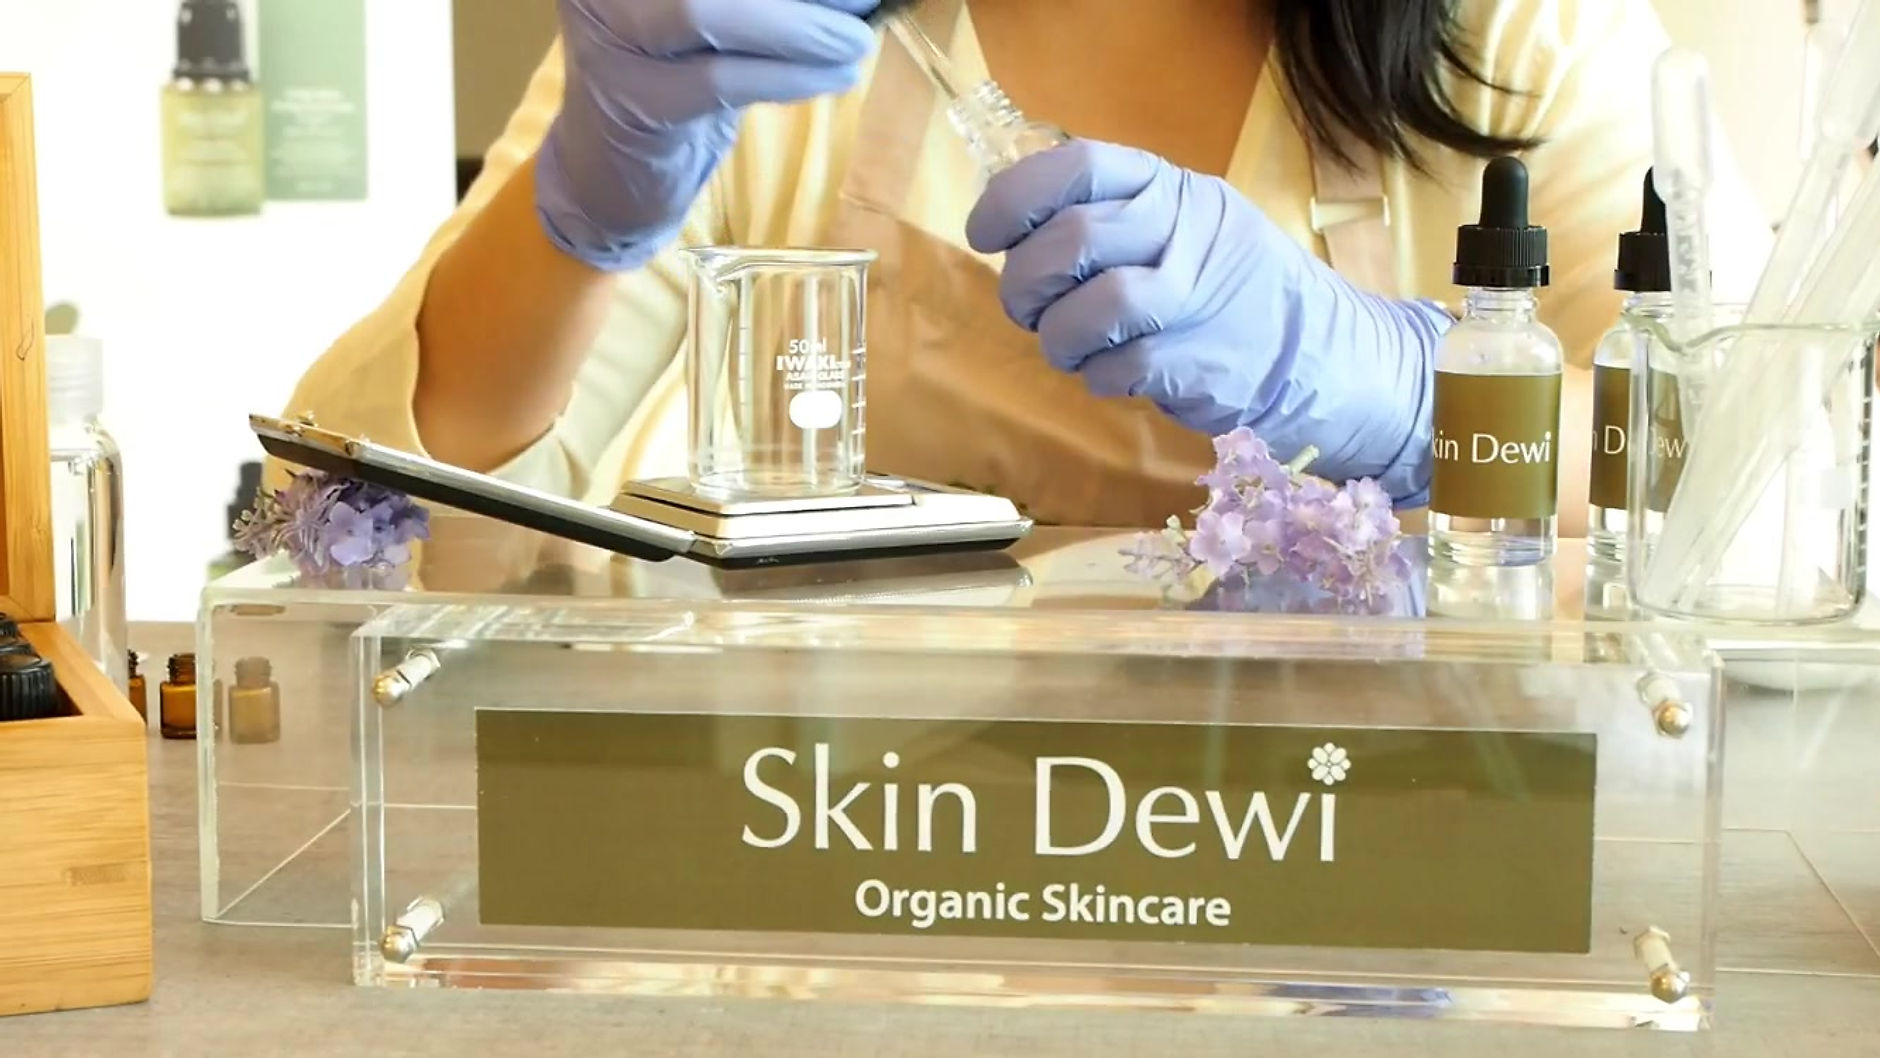 Natural Skin Care Formulation